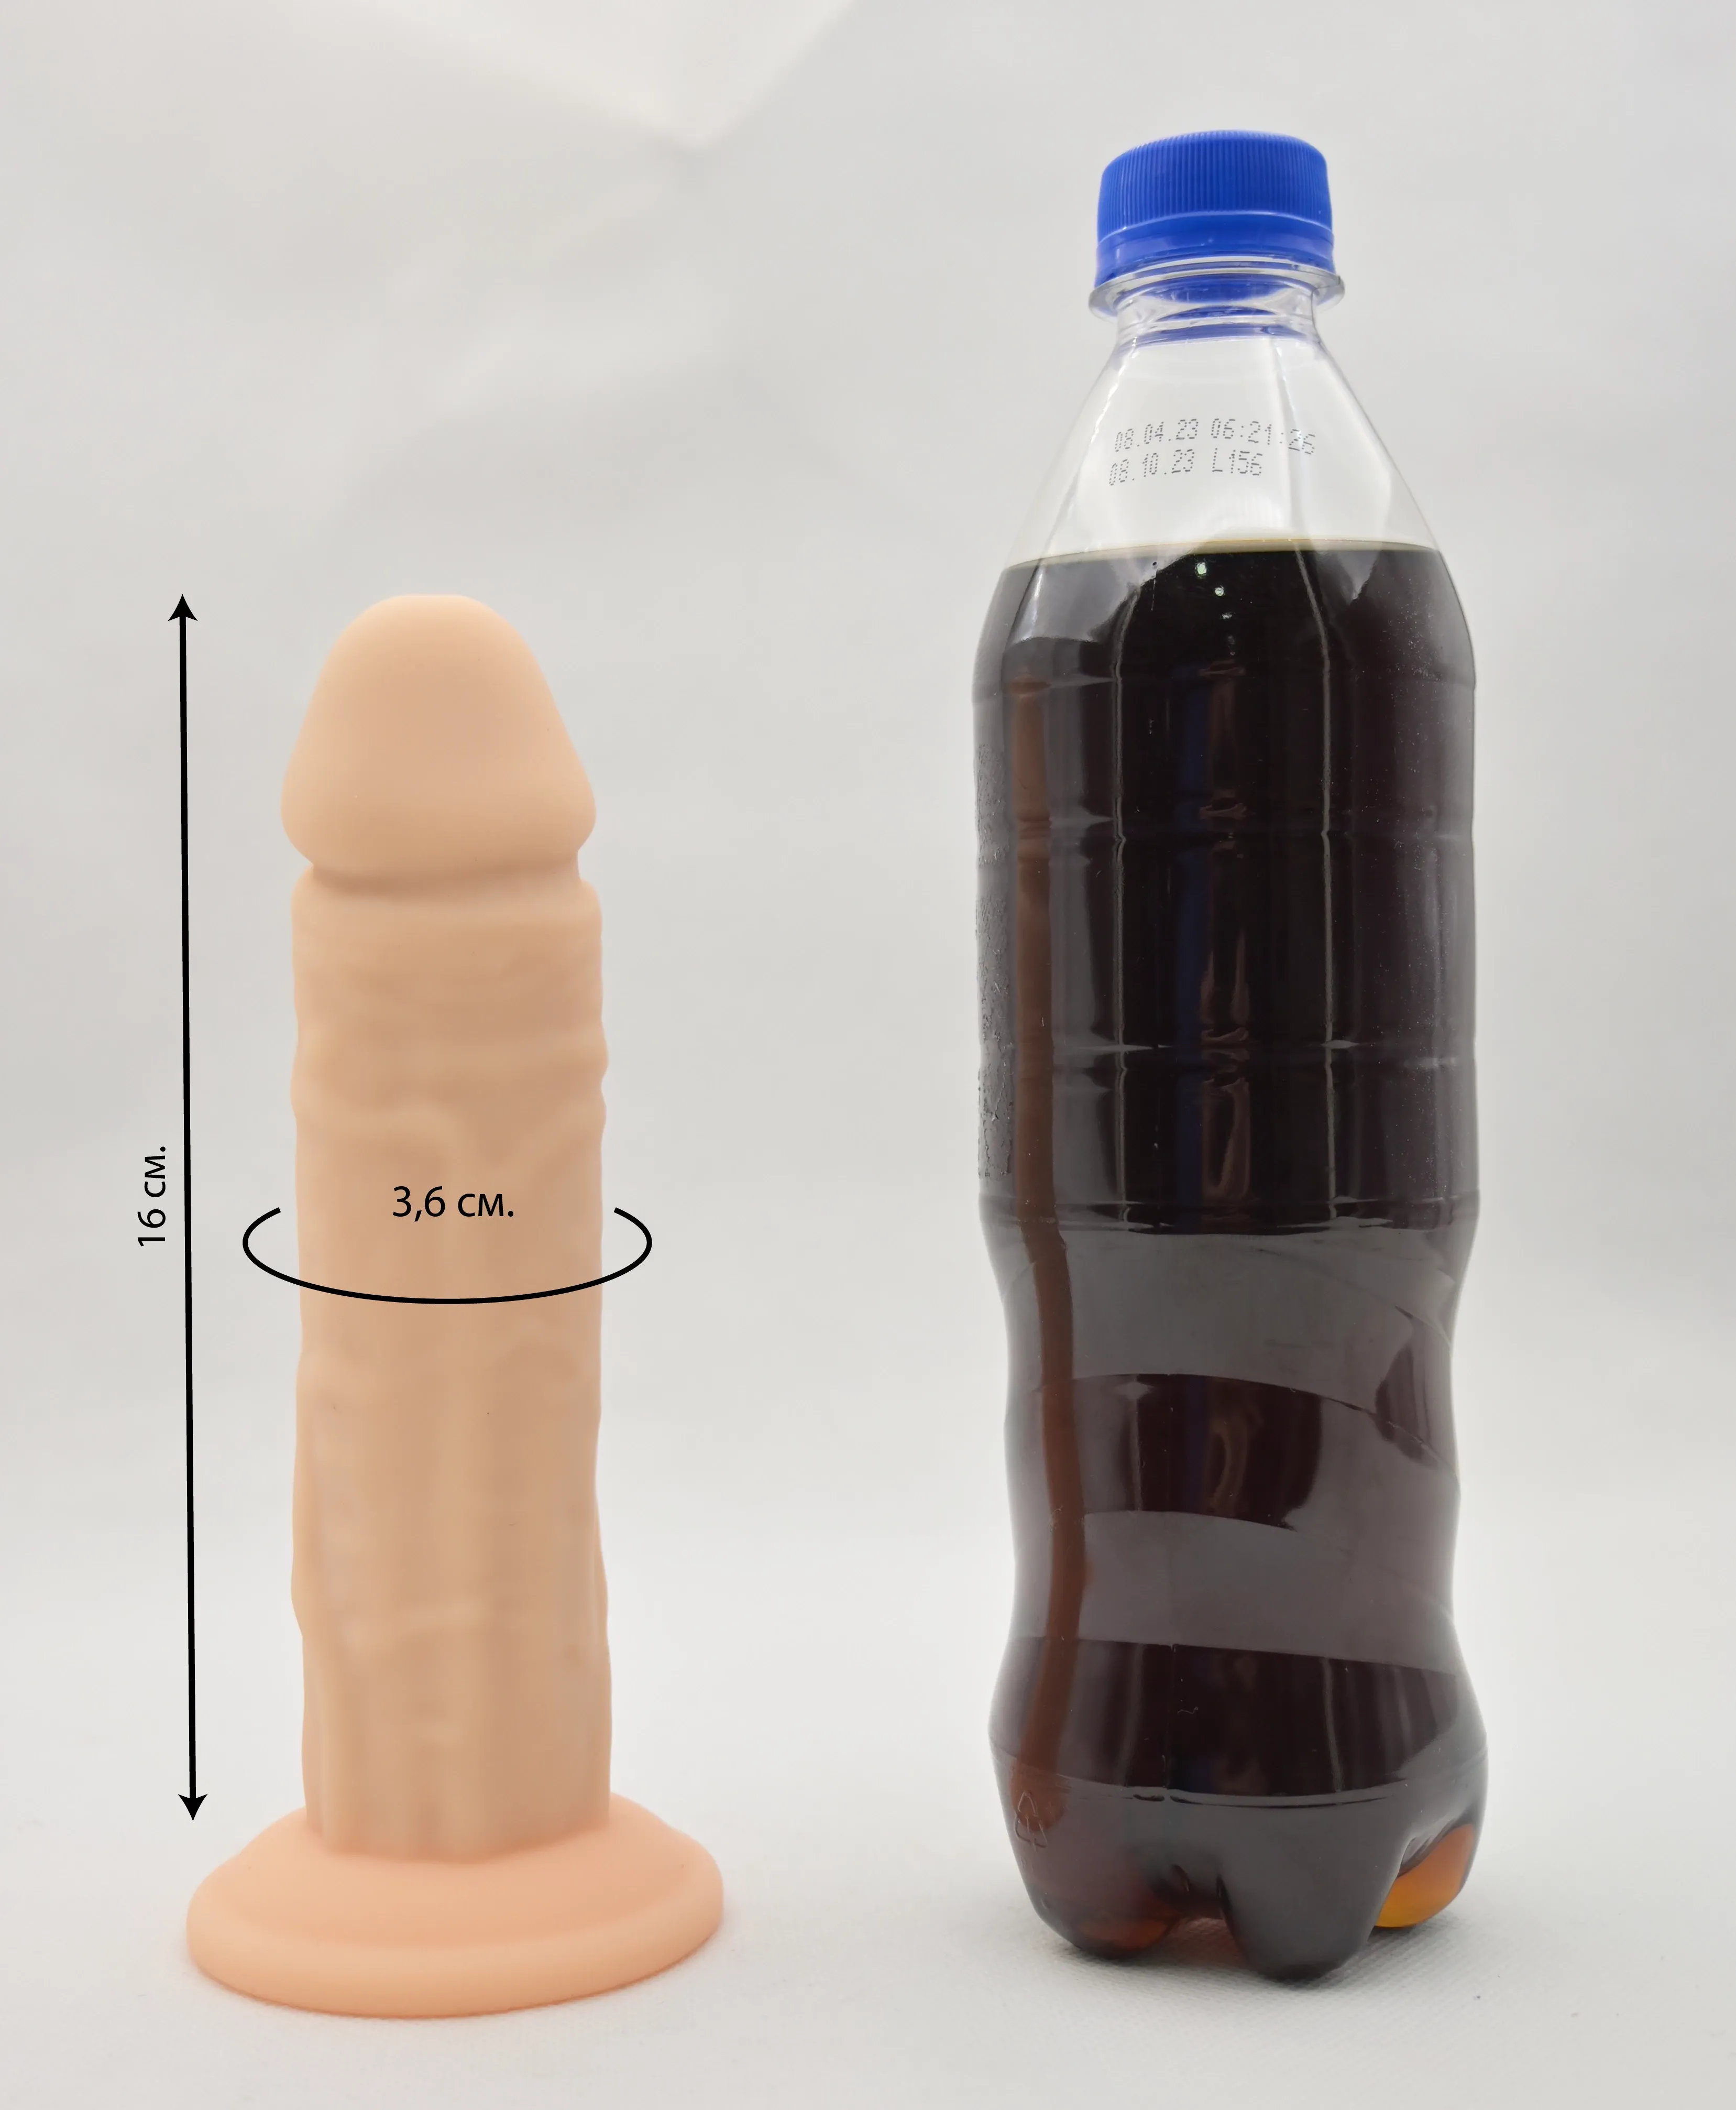 Размеры члена Jared L. и сравнение с бутылкой 0,5 л.